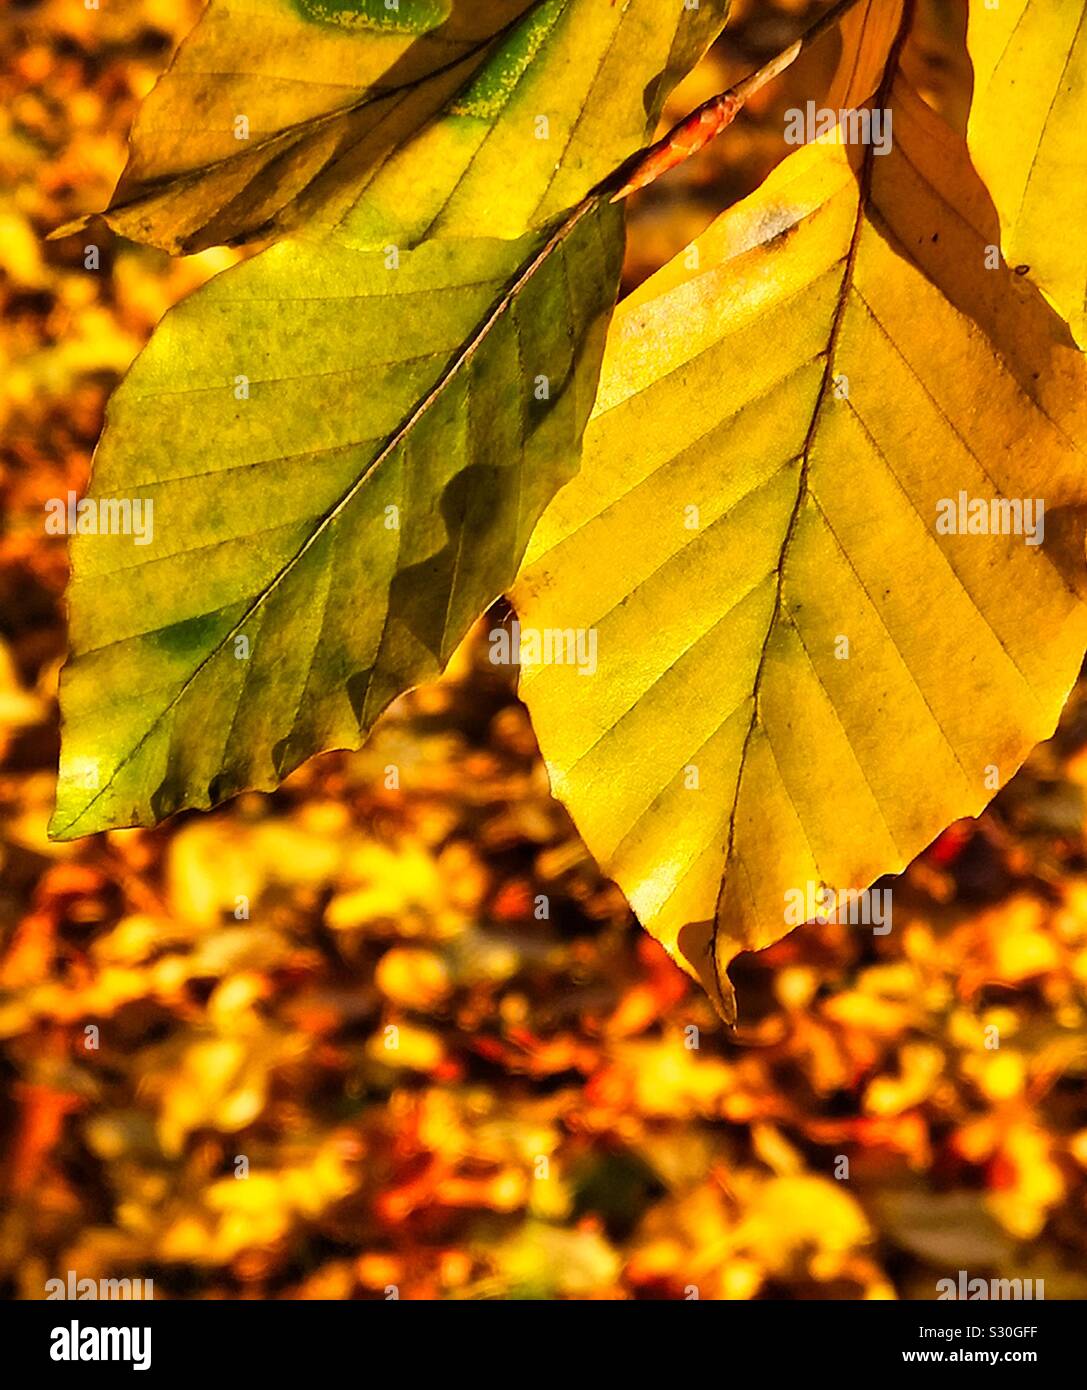 Golden autumn leaves in sunlight Stock Photo